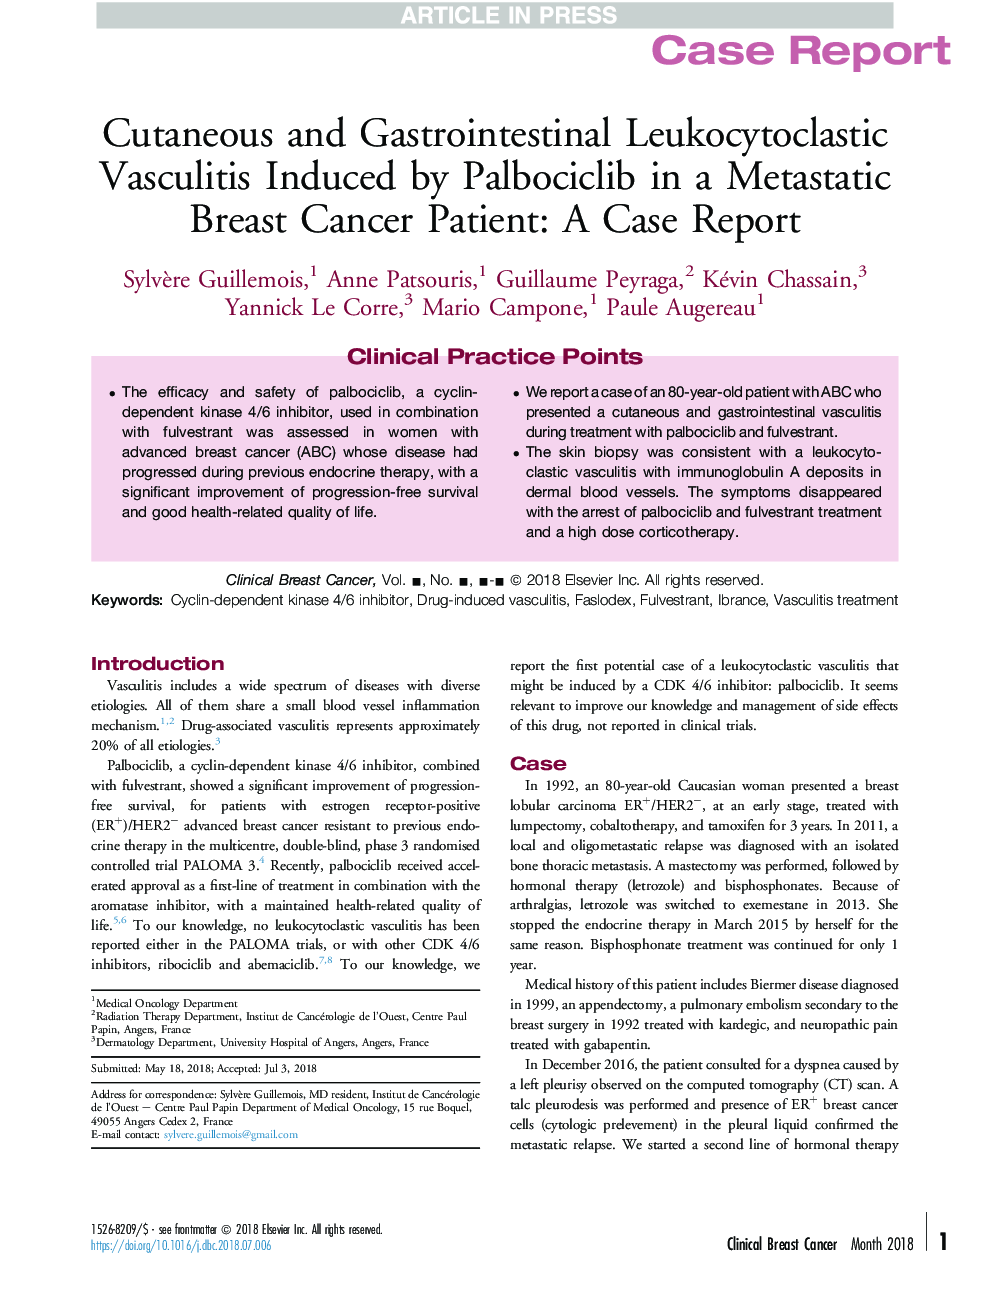 واکسولیت لوسسیتوکلستیک پوستی و دستگاه گوارش ناشی از پالوبسیکلیب در یک بیمار مبتلا به سرطان متاستاتیک پستان: گزارش مورد